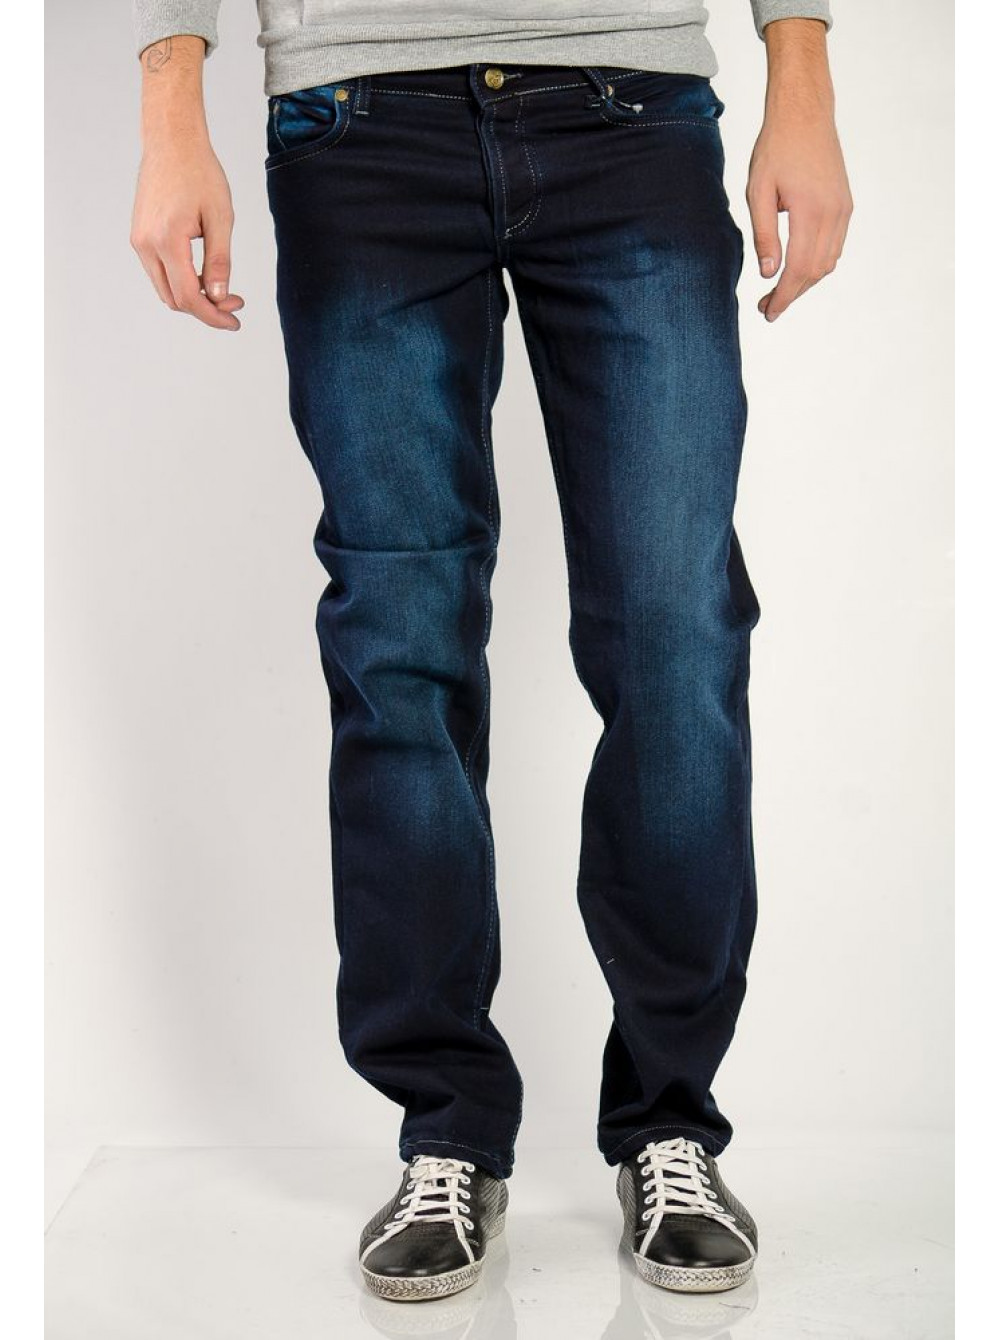 Джинсы мужские классические валберис. Мужские джинсы. Синие джинсы мужские. Темно синие джинсы мужские. Джинсы мужские классические.